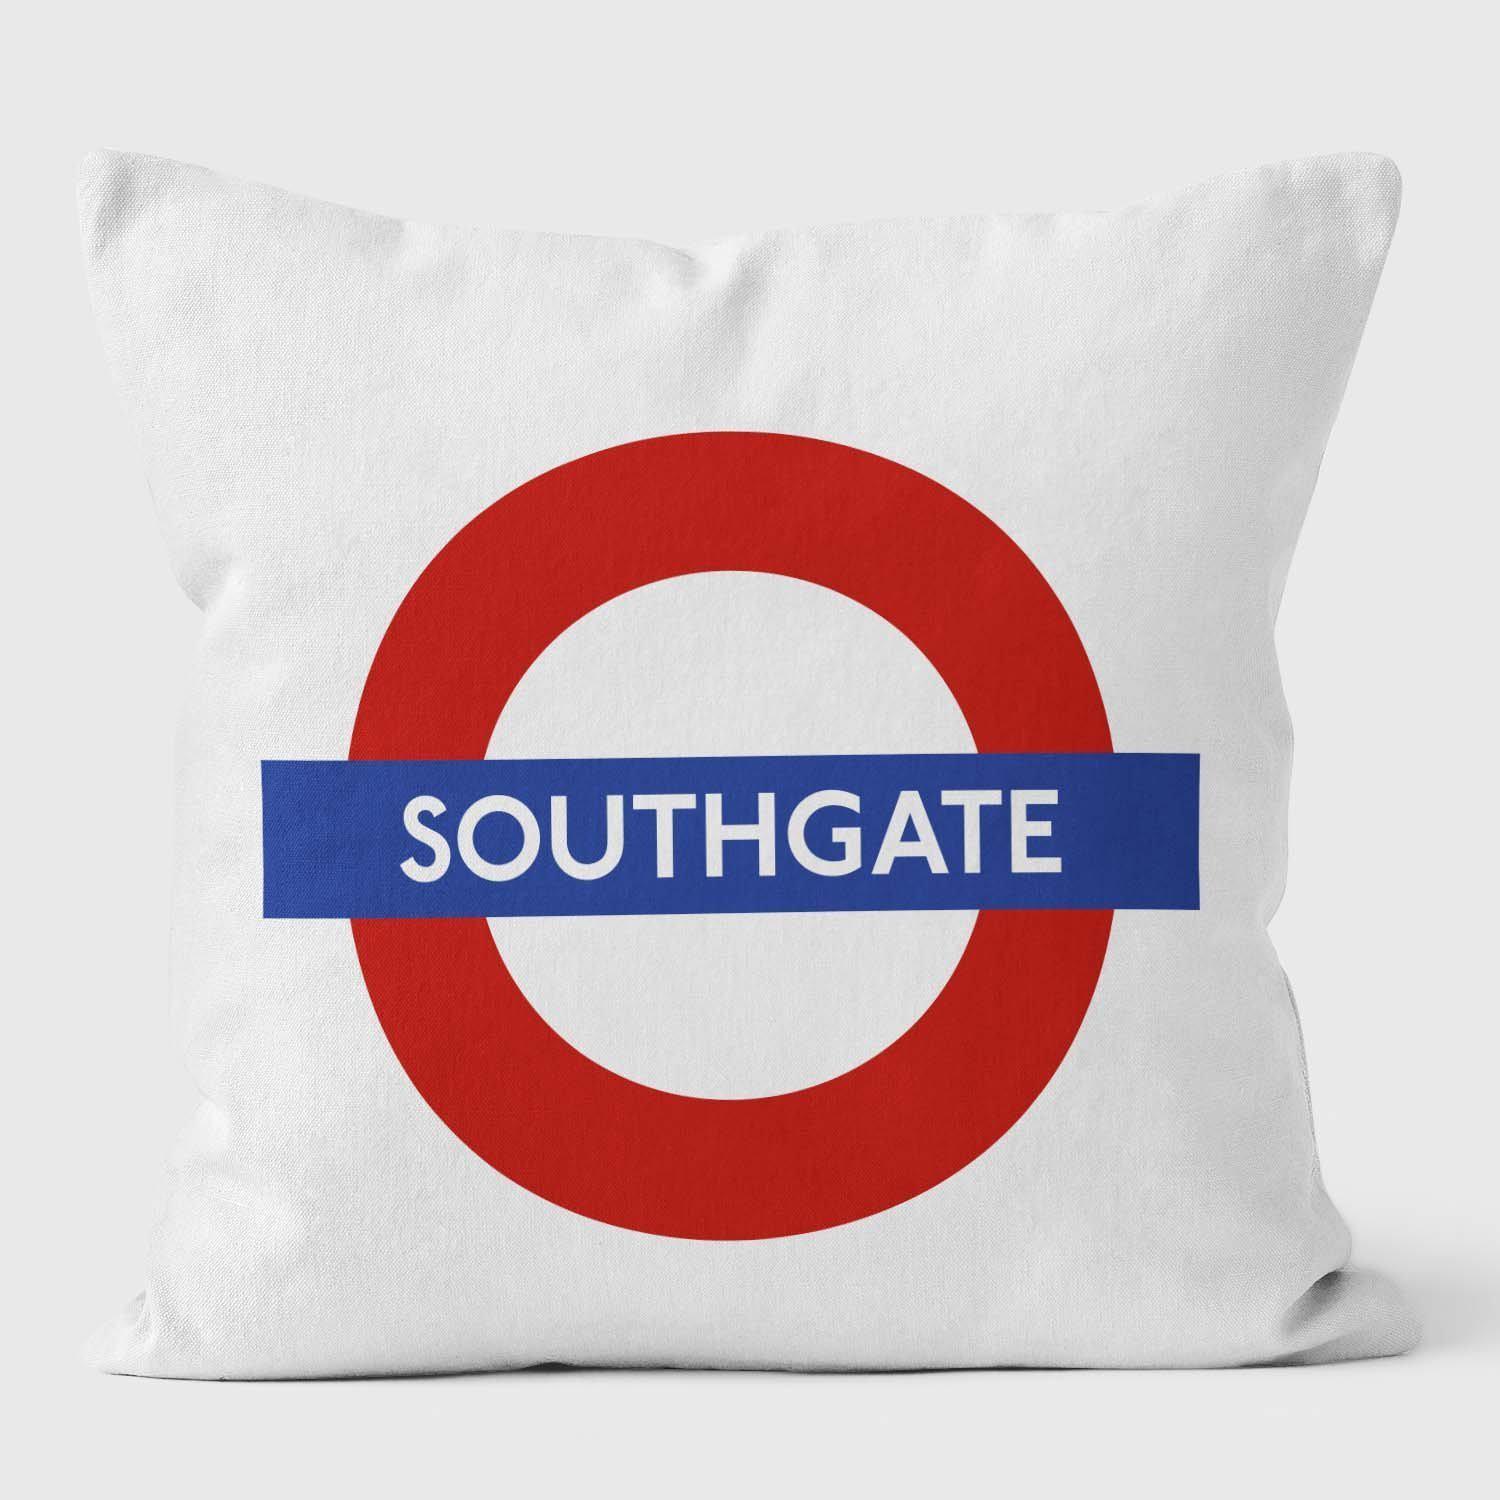 Southgate London Underground Tube Station Roundel Cushion - Handmade Cushions UK - WeLoveCushions